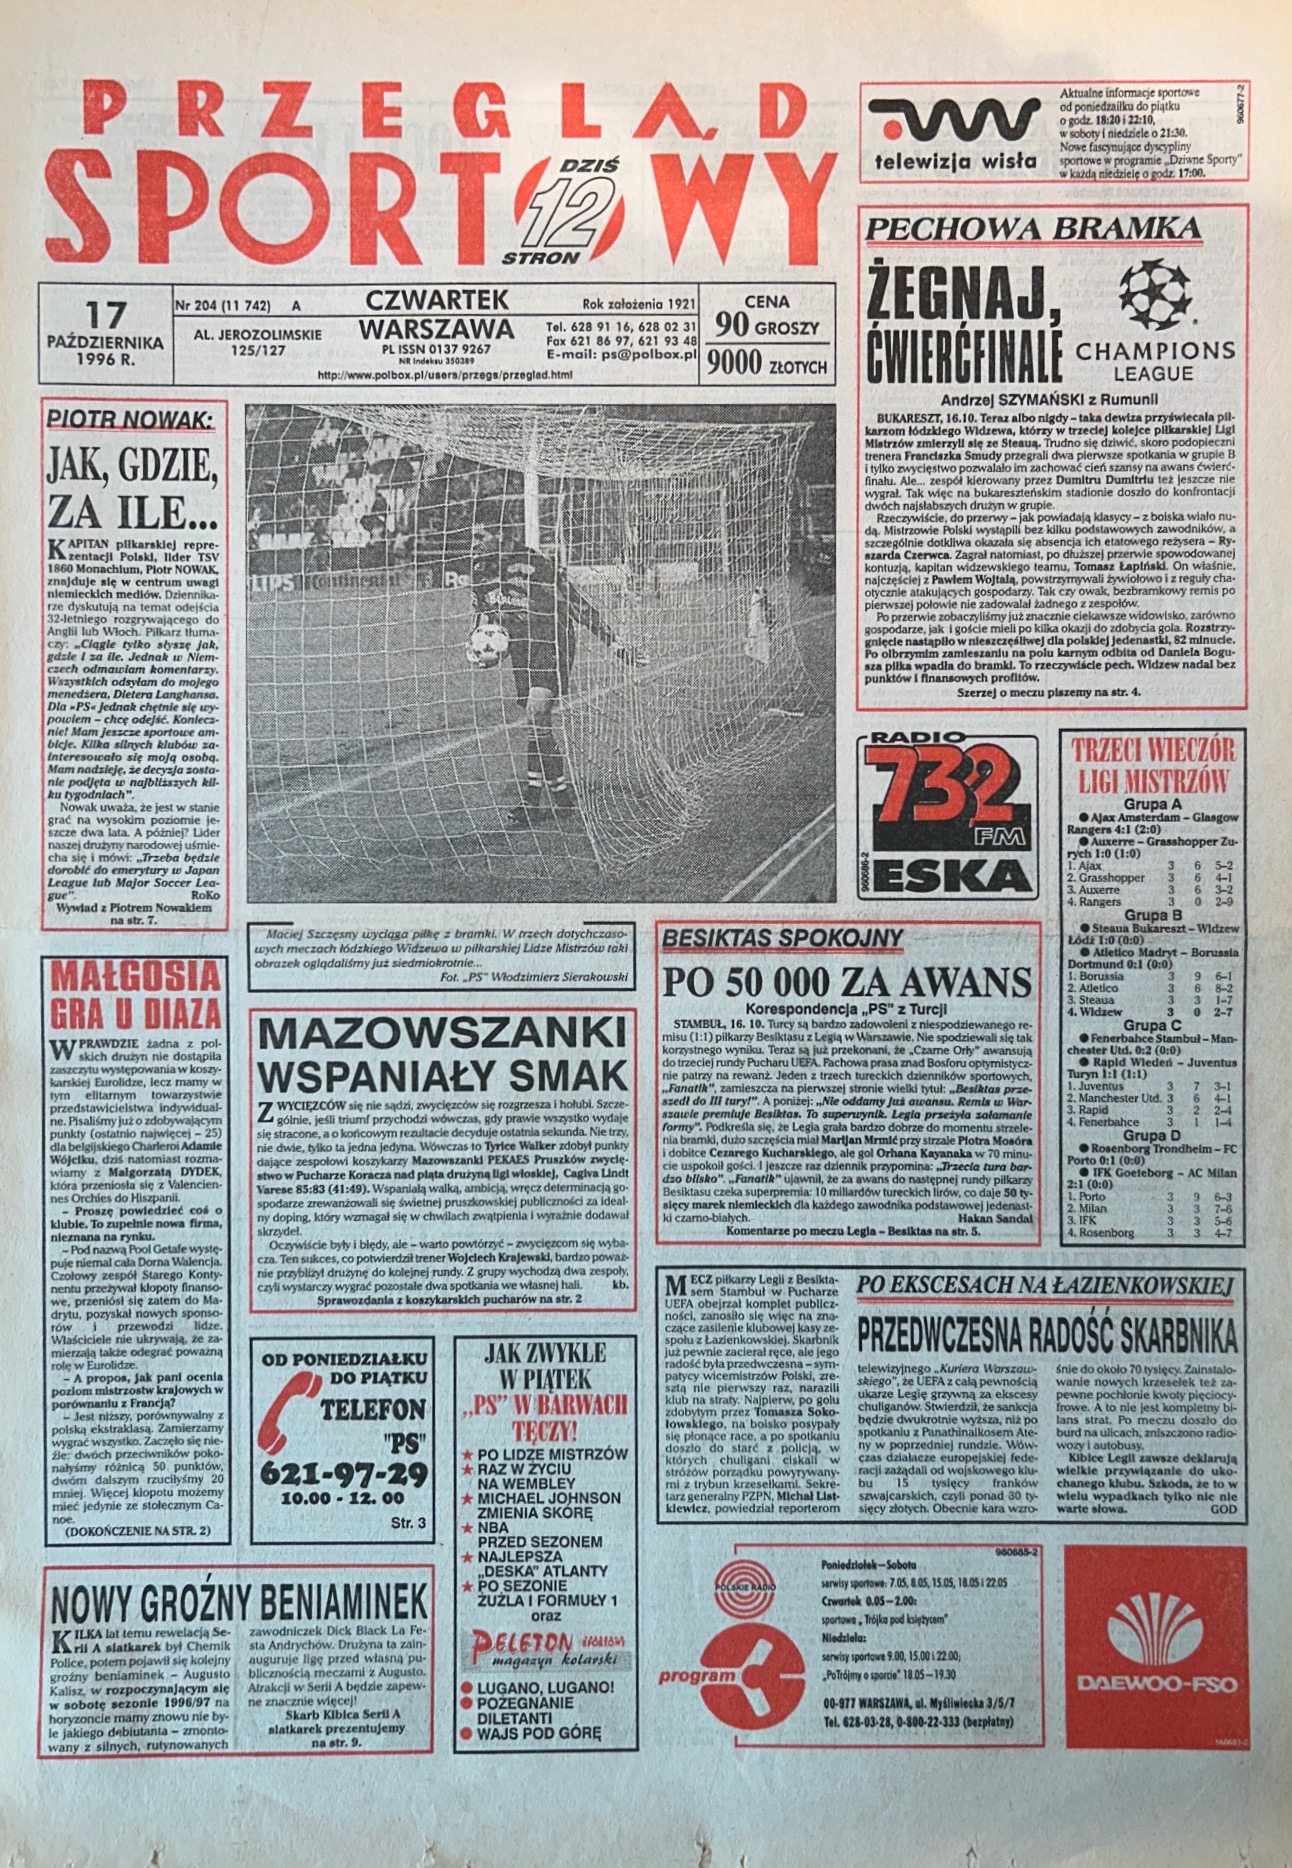 Przegląd Sportowy po meczu Steaua Bukareszt - Widzew Łódź 1:0 (16.10.1996)